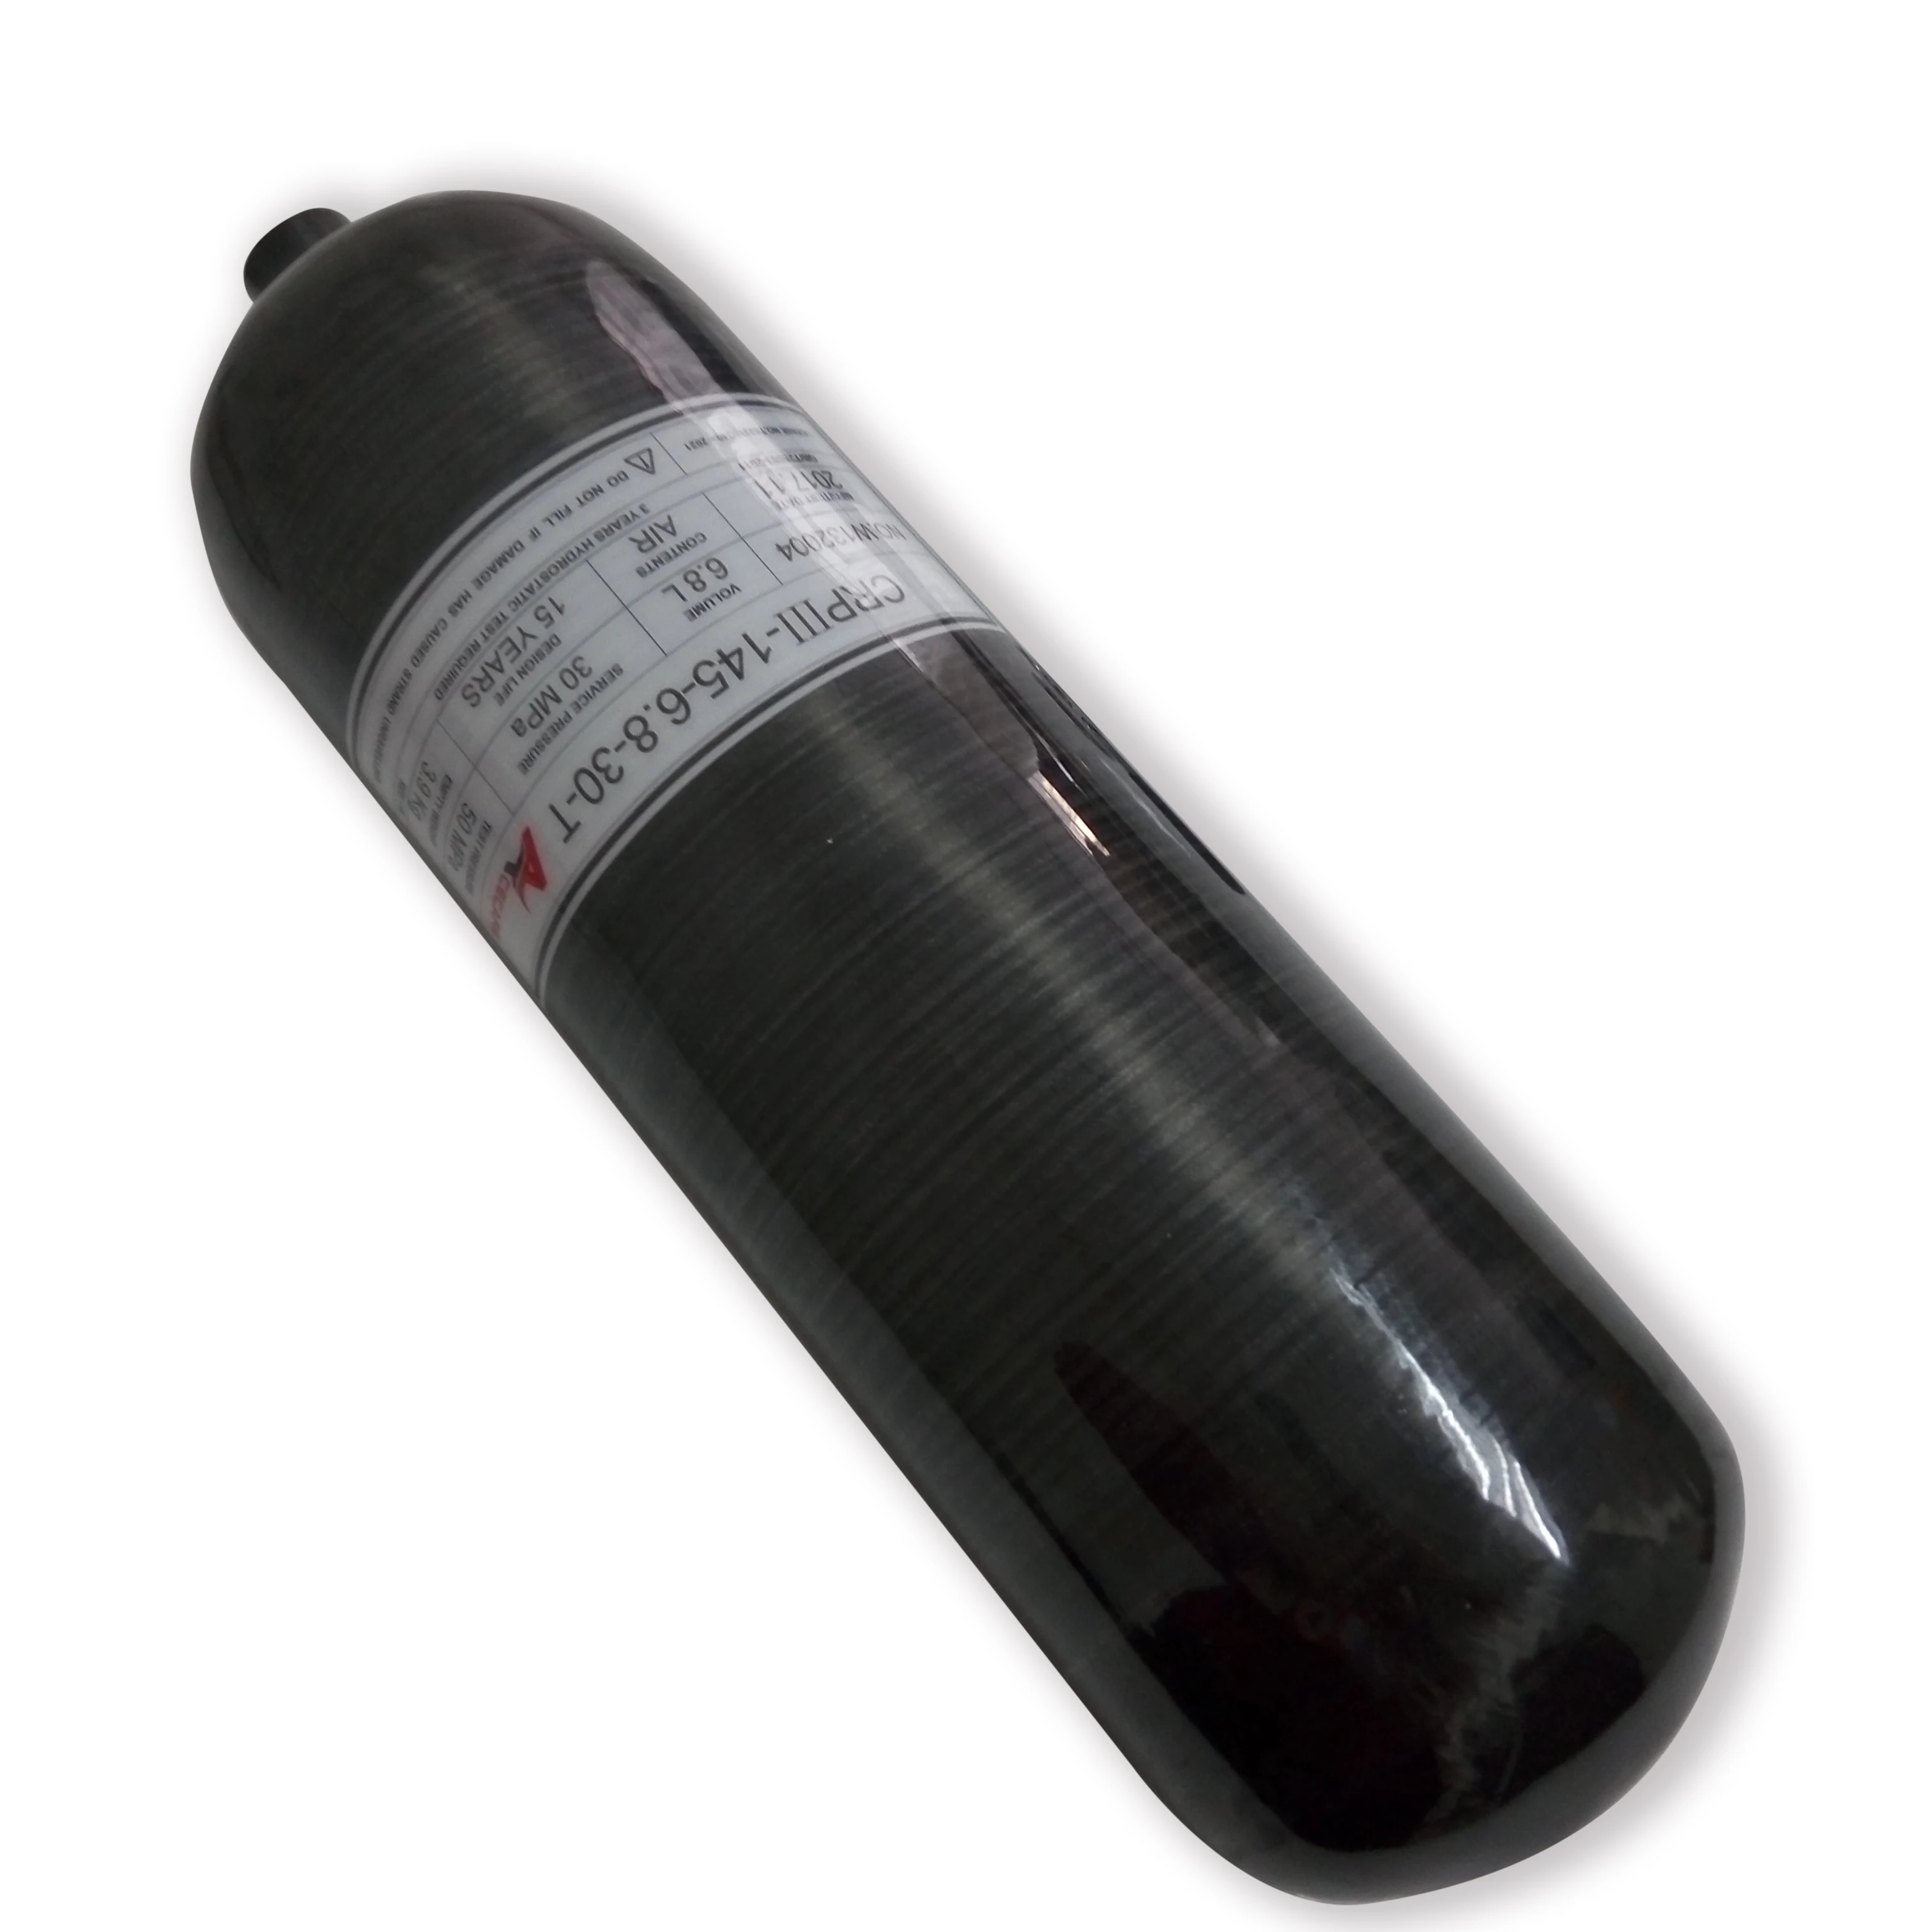 ACECRE бутылка Воздушный пистолет цилиндр для пейнтбола углерода 4500psi вентиль давления для ружья для пейнтбола мини акваланга бак станция заполнения pcp AC36831